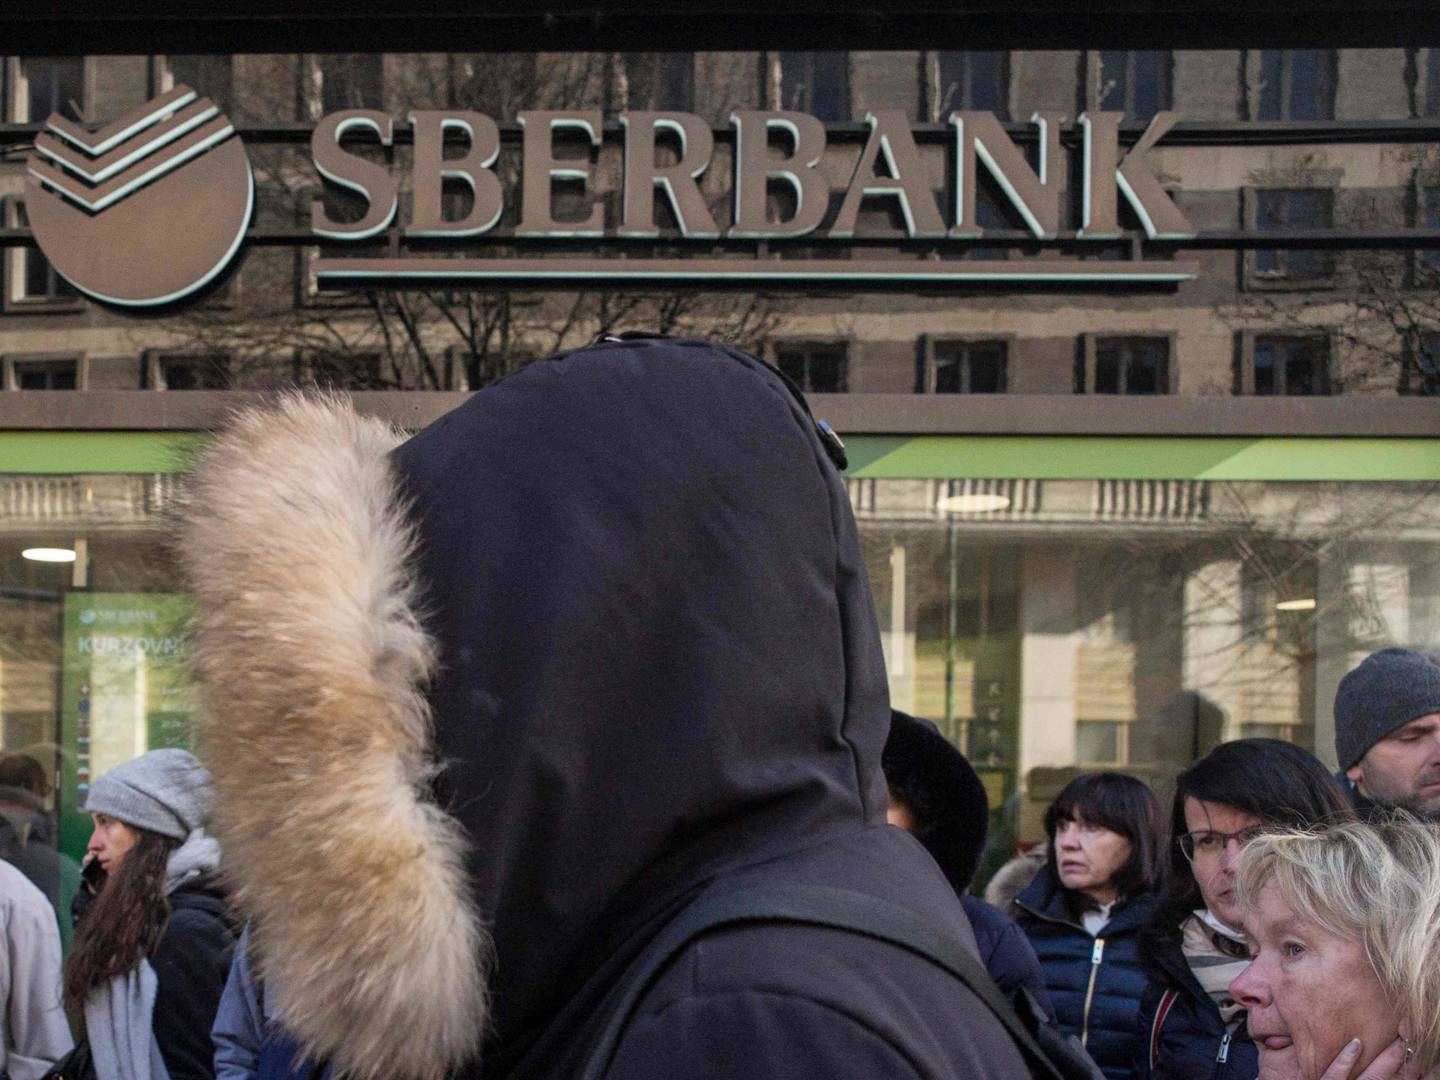 I en ny sanktionspakke stiller EU nu skarpt på den finansielle sektor. I praksis vil 70 pct. af den russiske bankverden blive berørt, siger udenrigschef Josep Borrell. (ARKIV) | Foto: MICHAL CIZEK/AFP / AFP